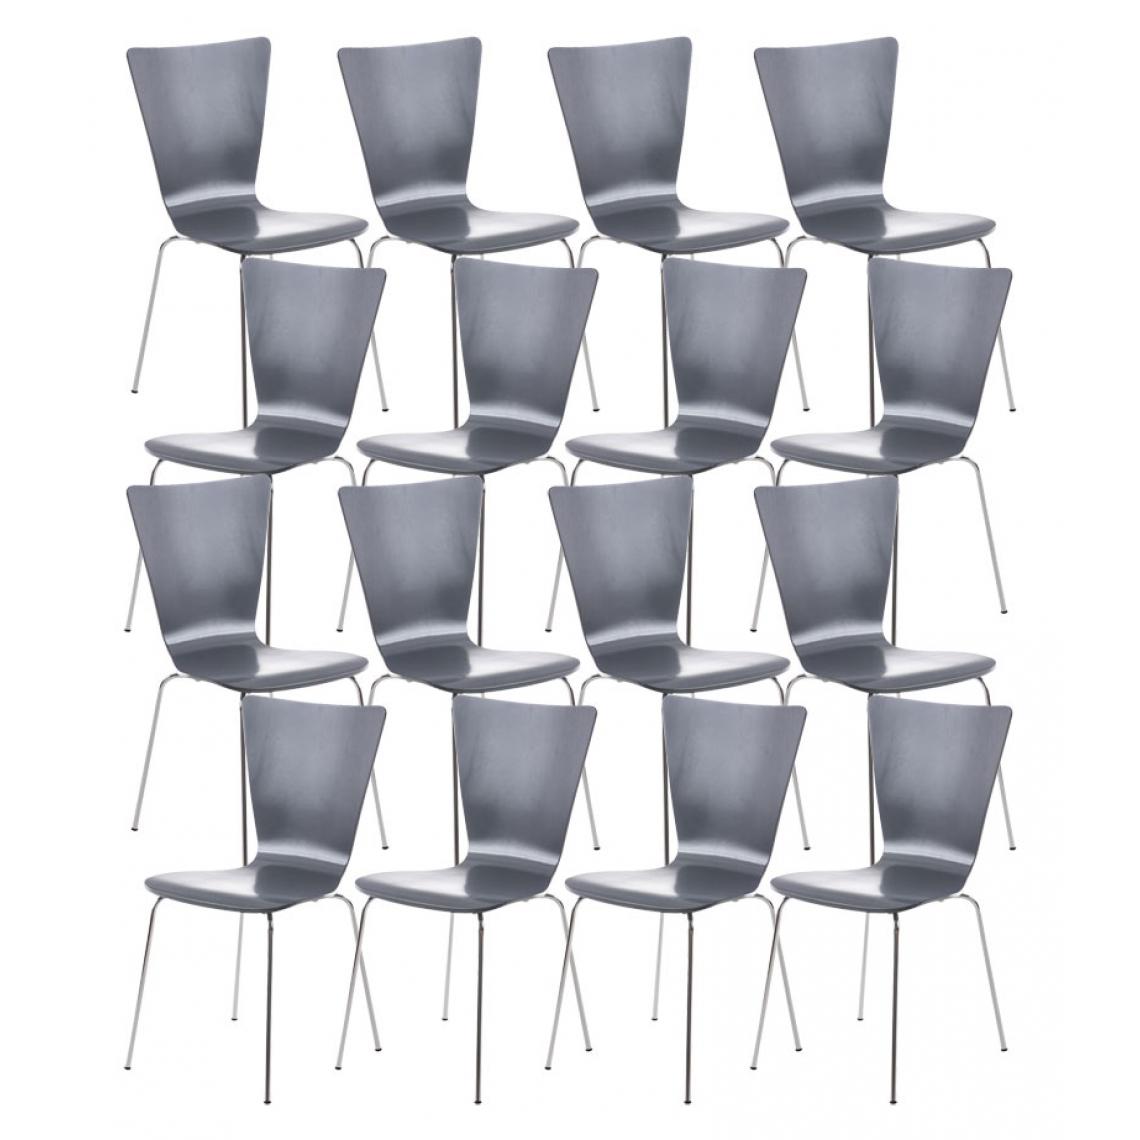 Icaverne - Inedit Ensemble de 16 chaises visiteurs ligne Jakarta couleur gris - Chaises